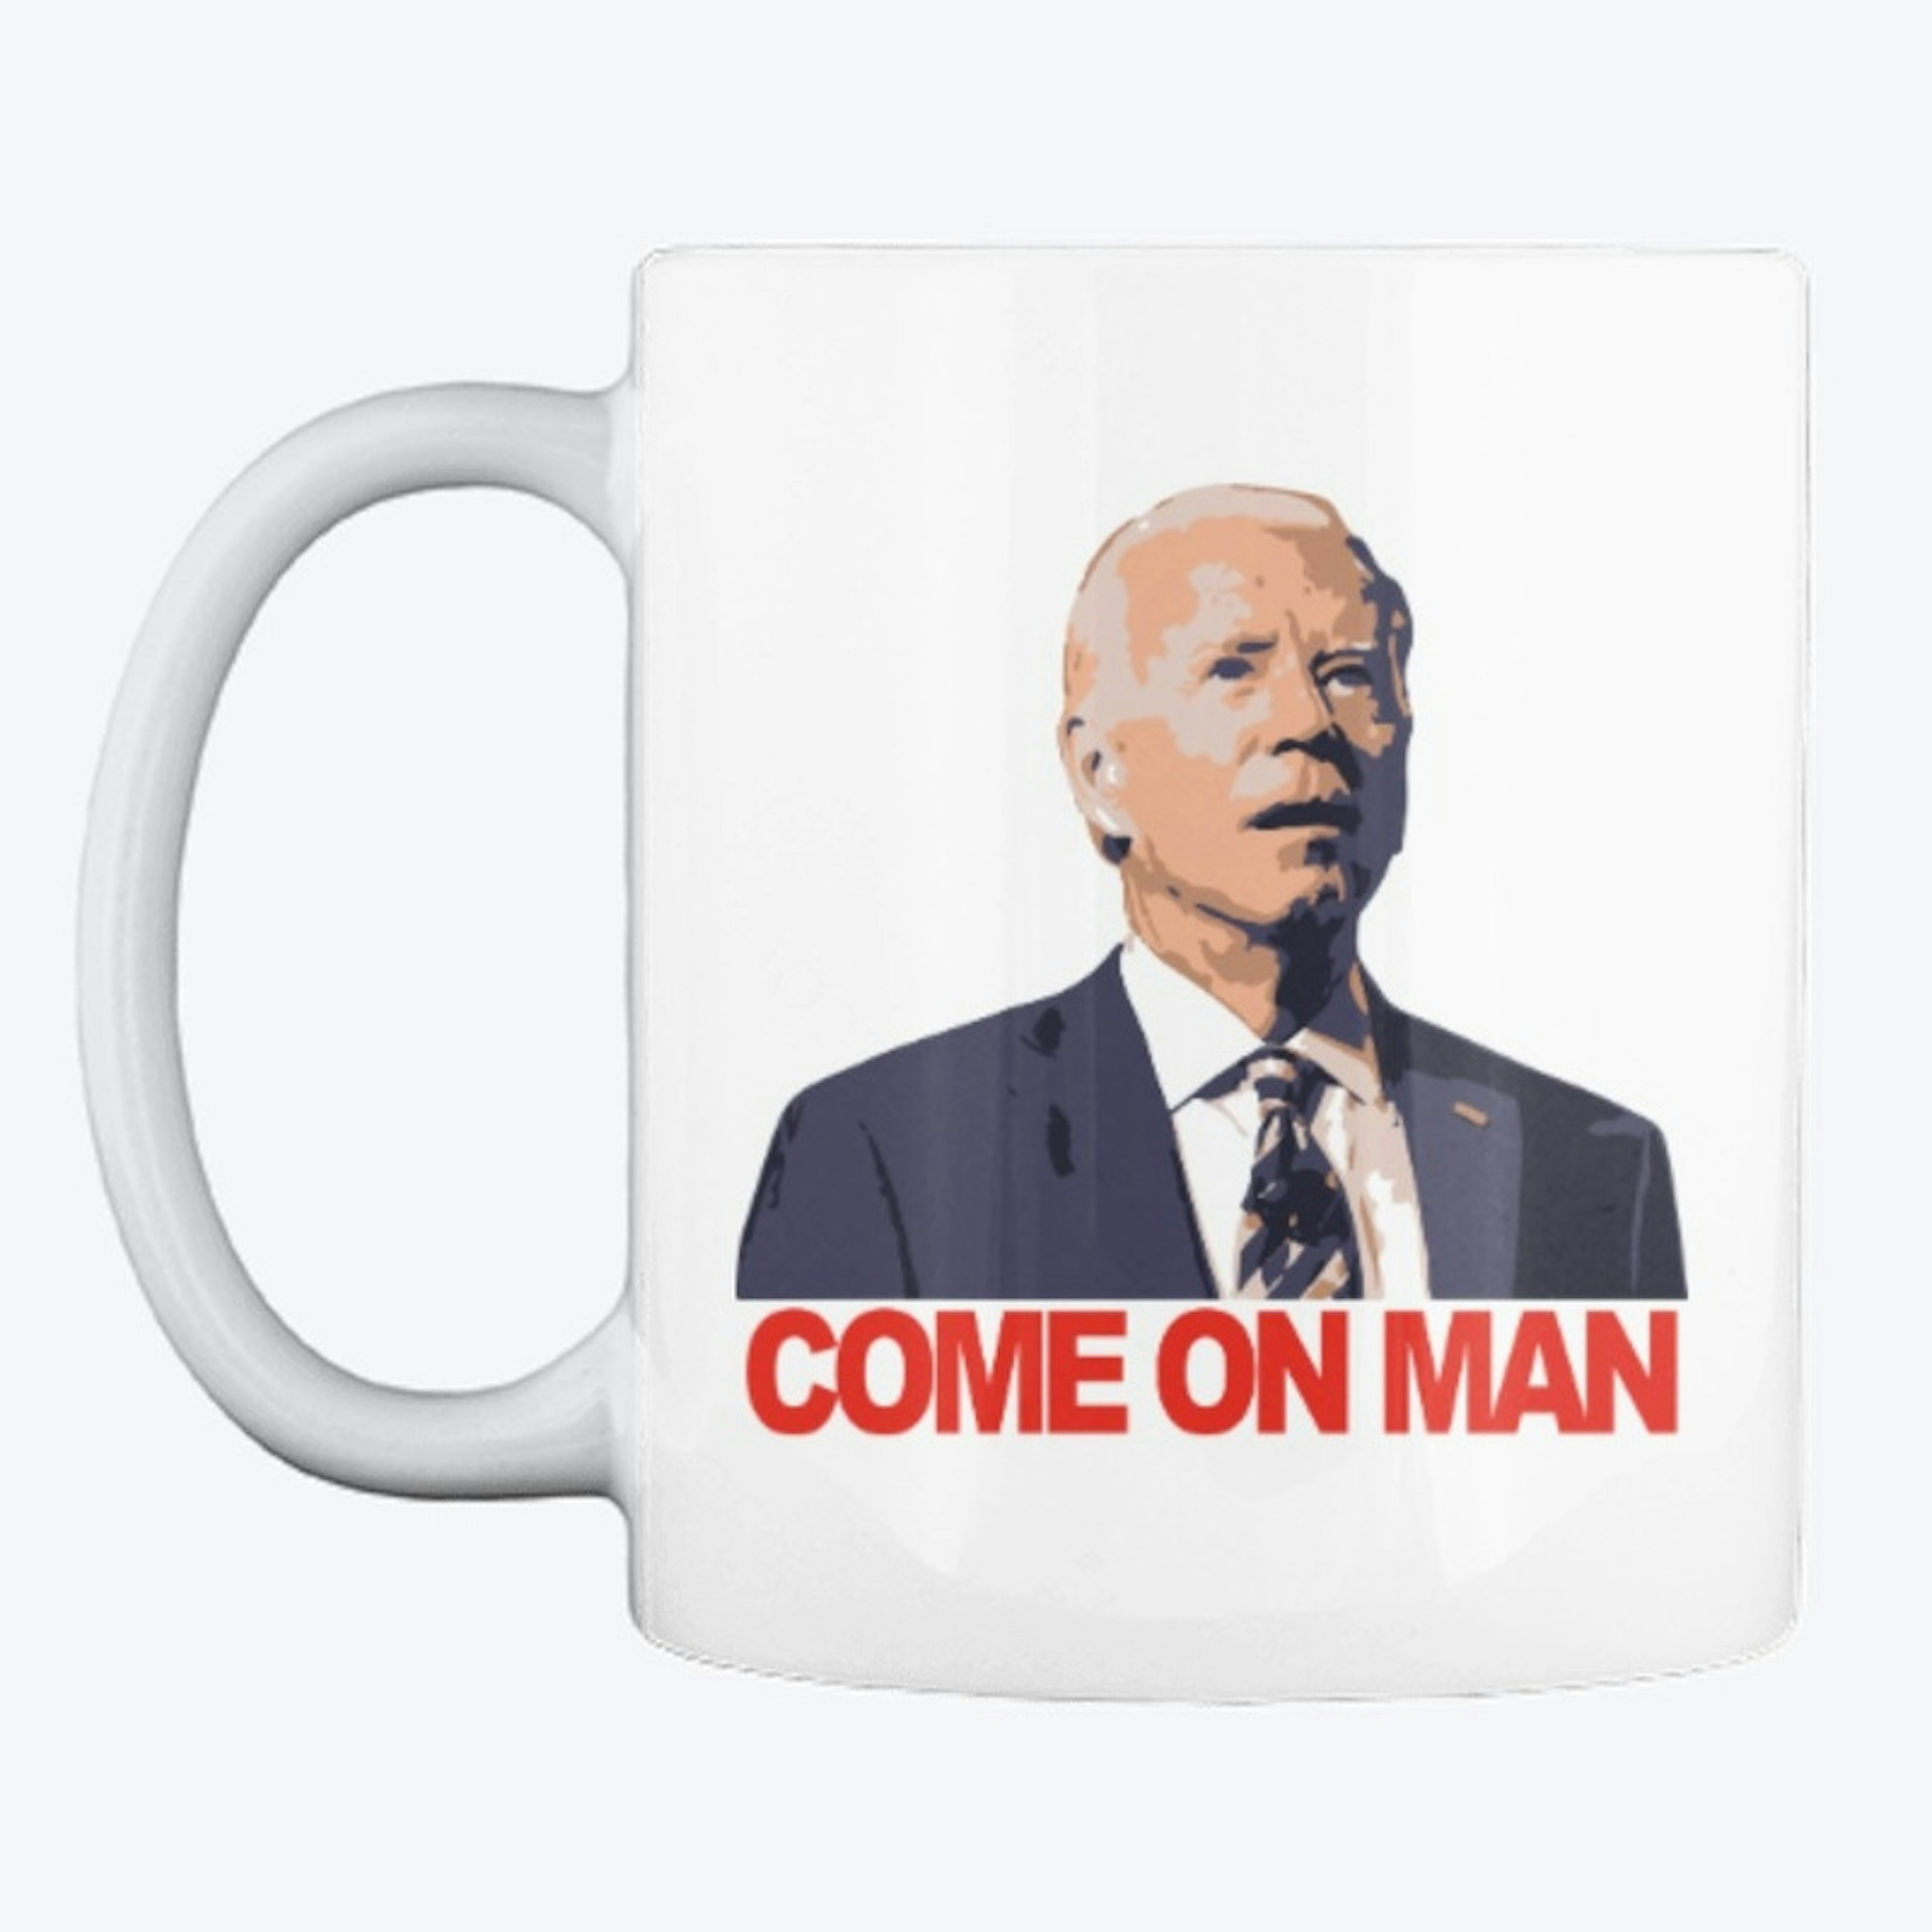 Biden - Come on man